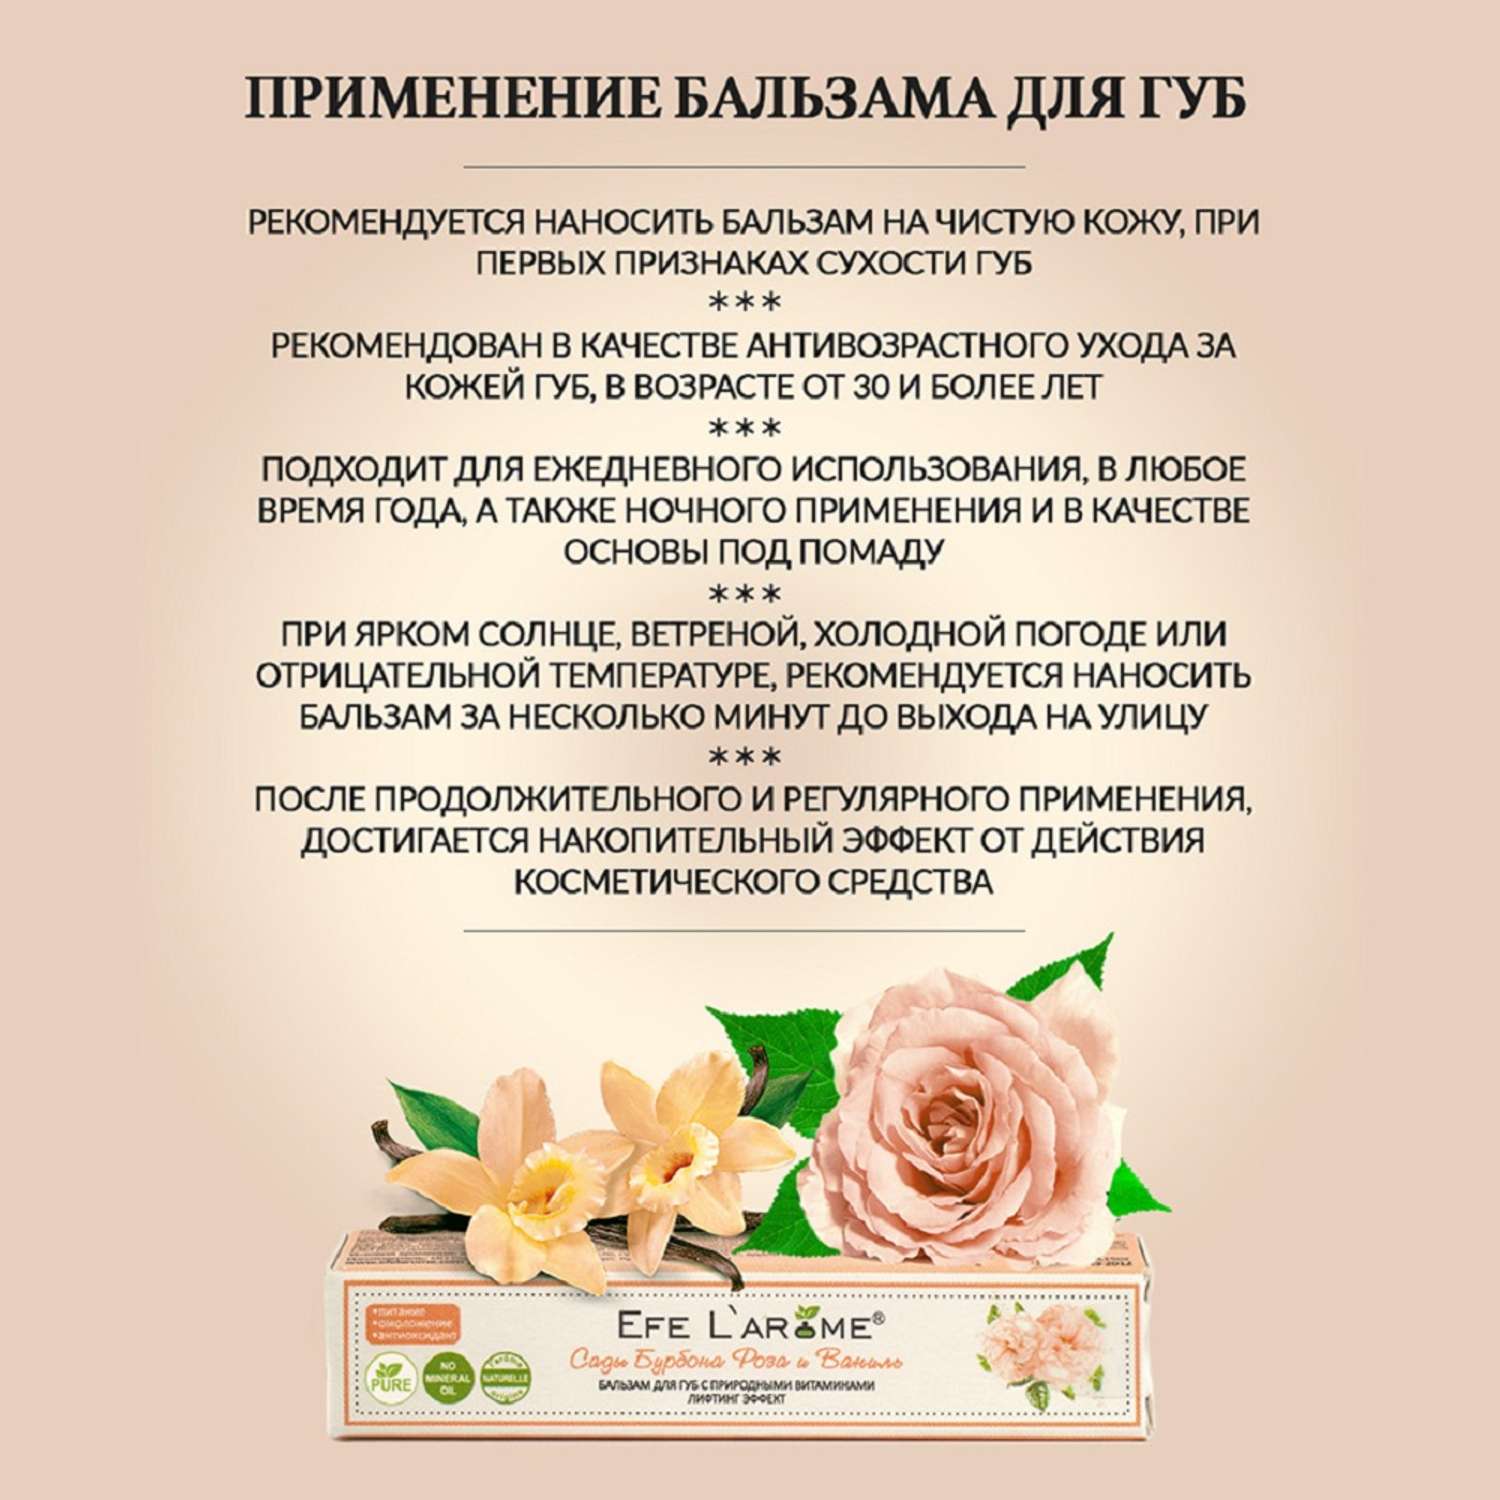 Бальзам для губ Efe L’arome Сады Бурбона Роза и Ваниль увлажнение с эфирным маслом розы и ванили - фото 7